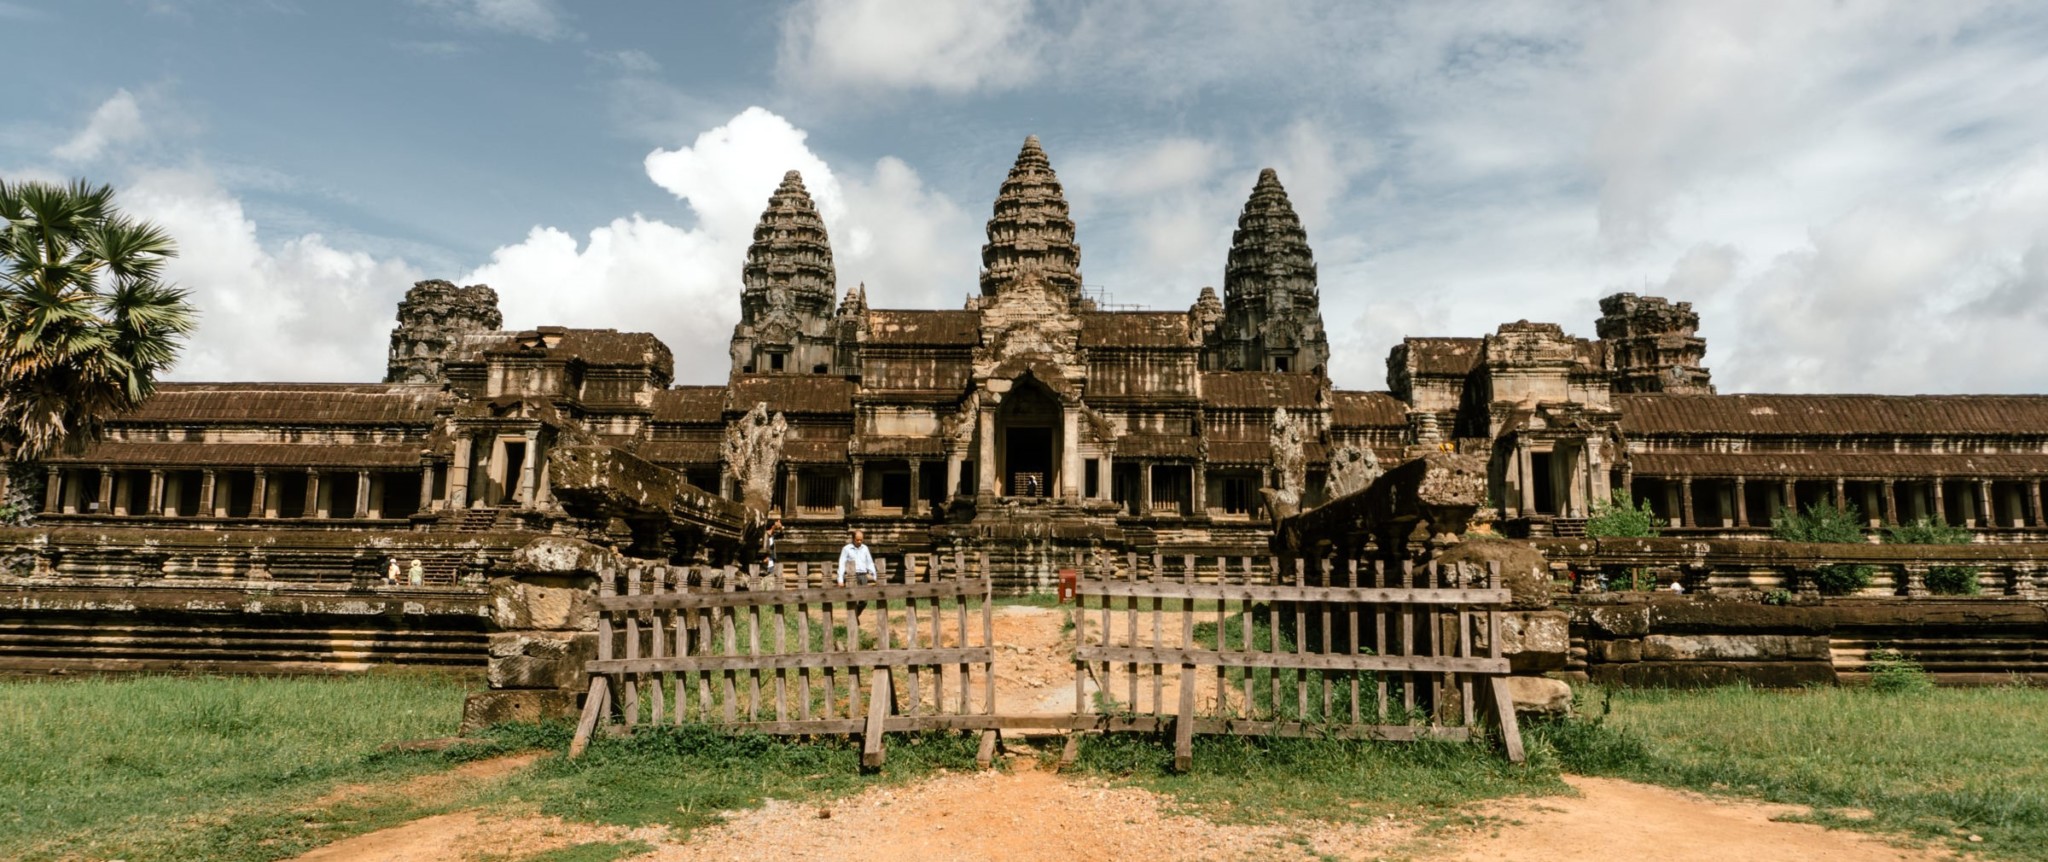 Камбоджа: география, экономика, наука и культура